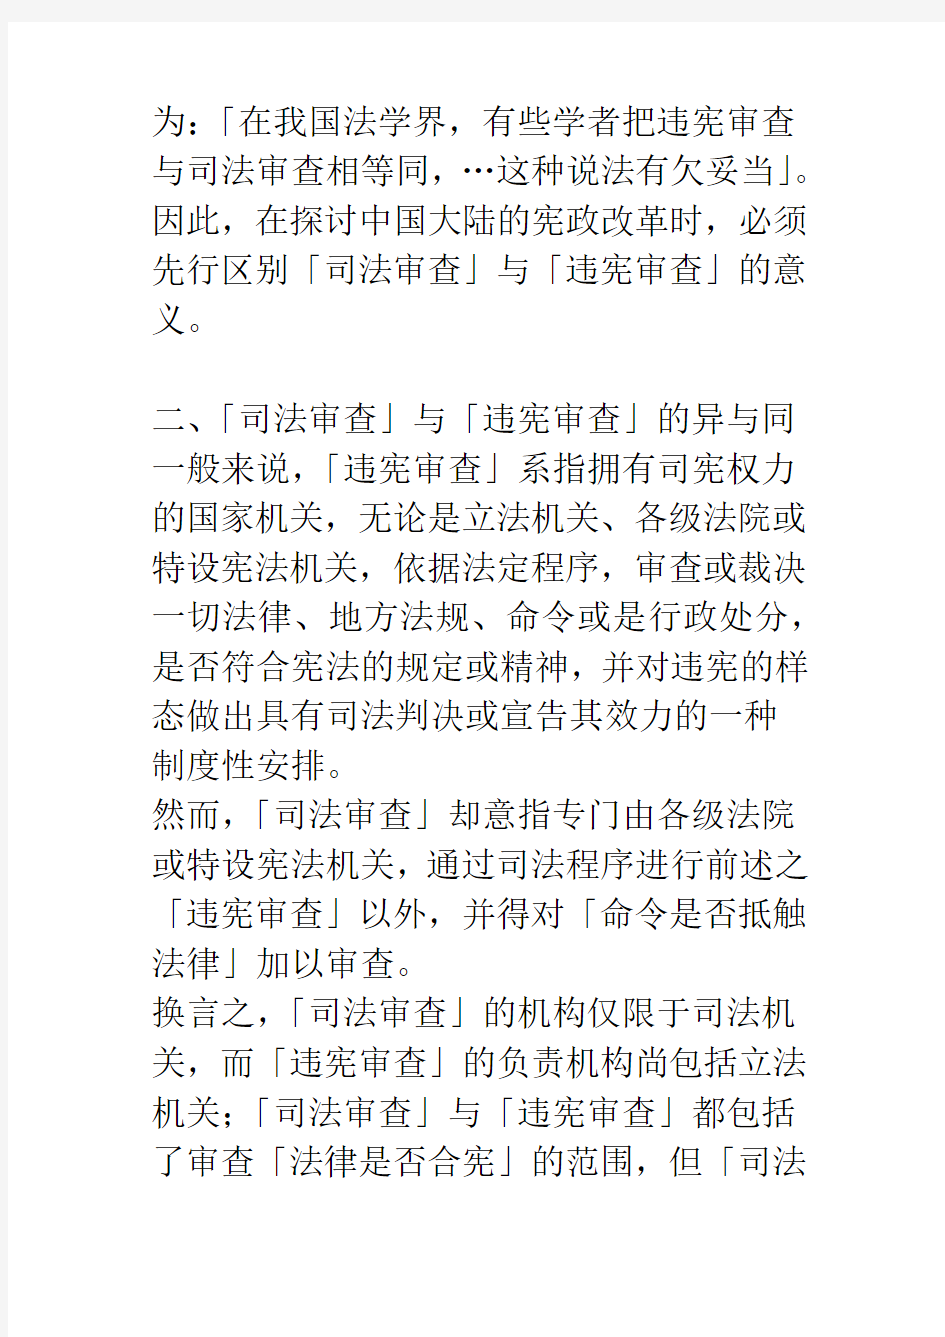 中国大陆的「违宪审查」与「司法审查」_1